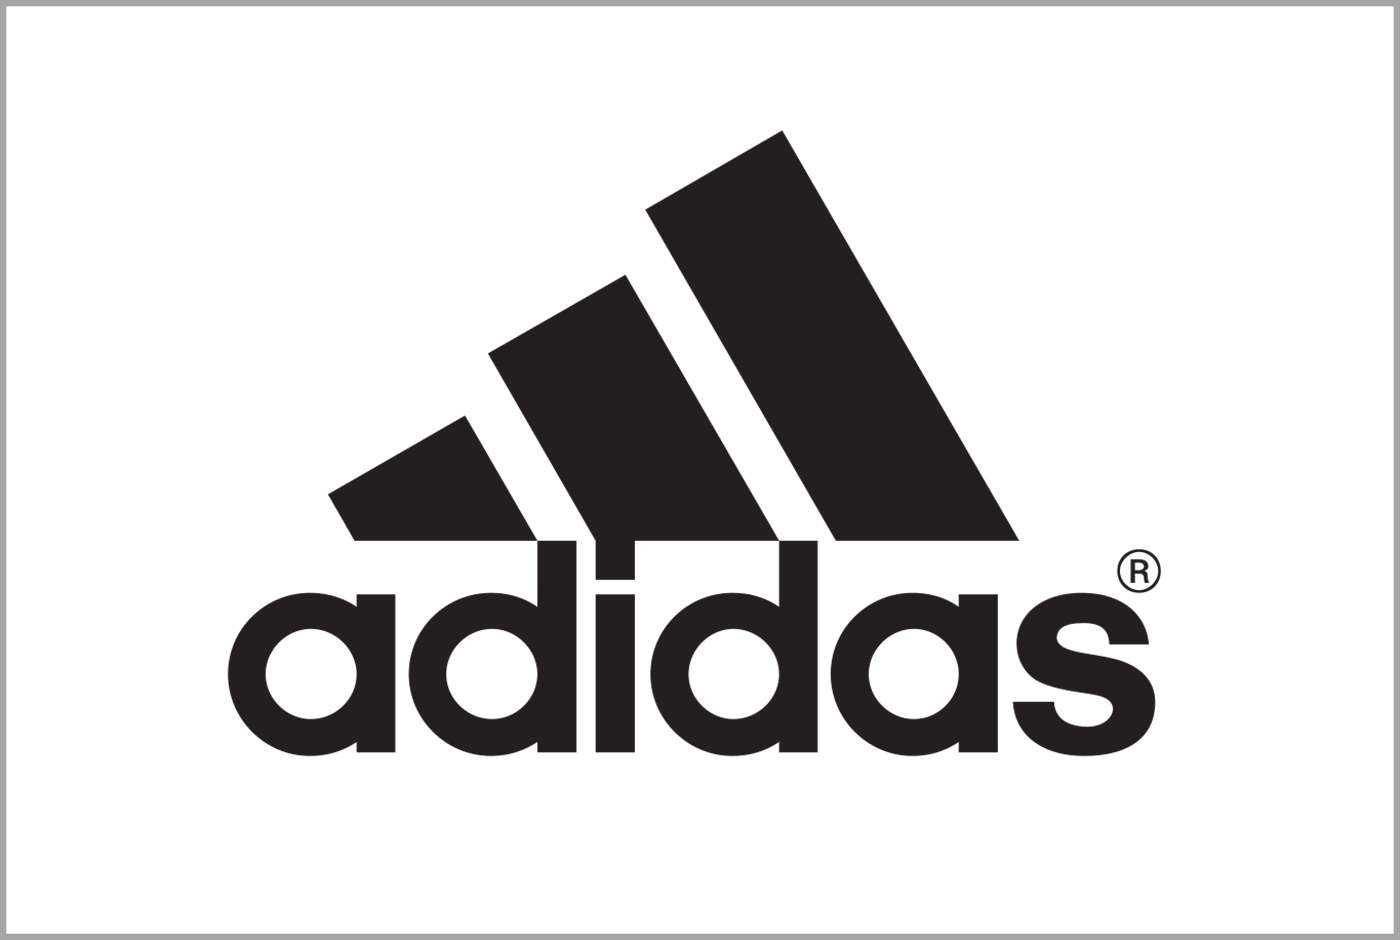 adidas-Logo.png